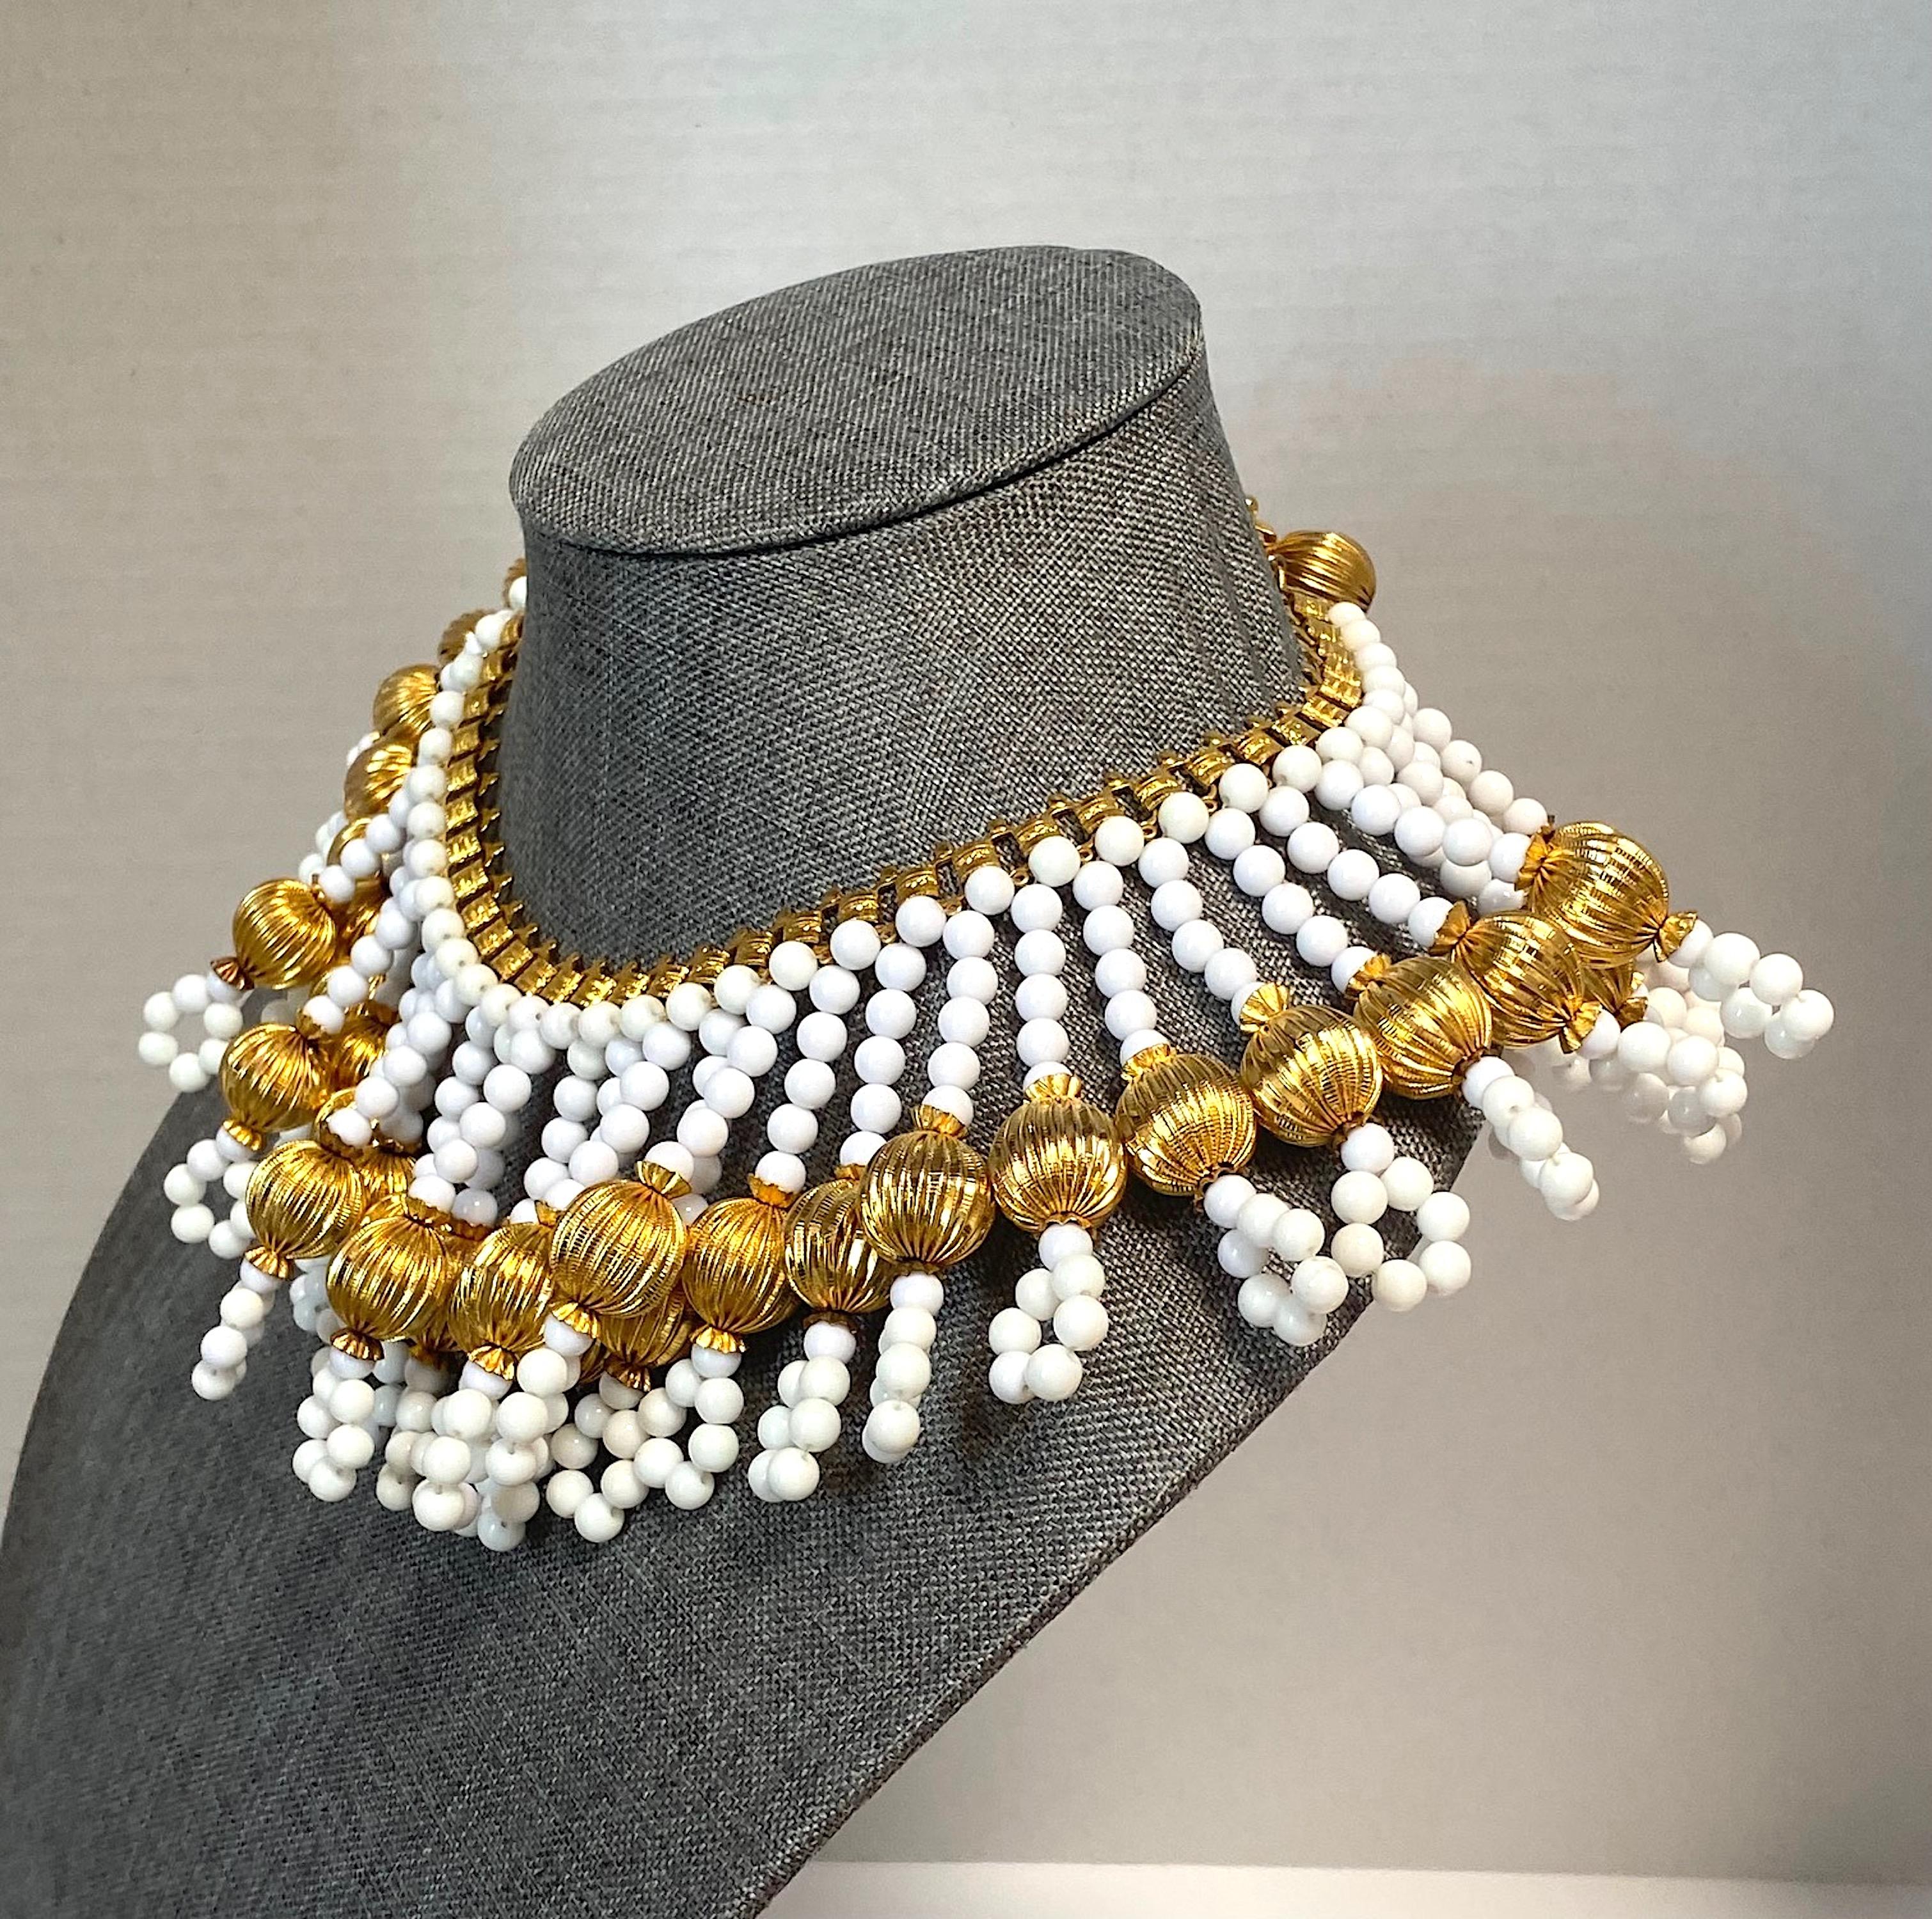 1970s jewelry